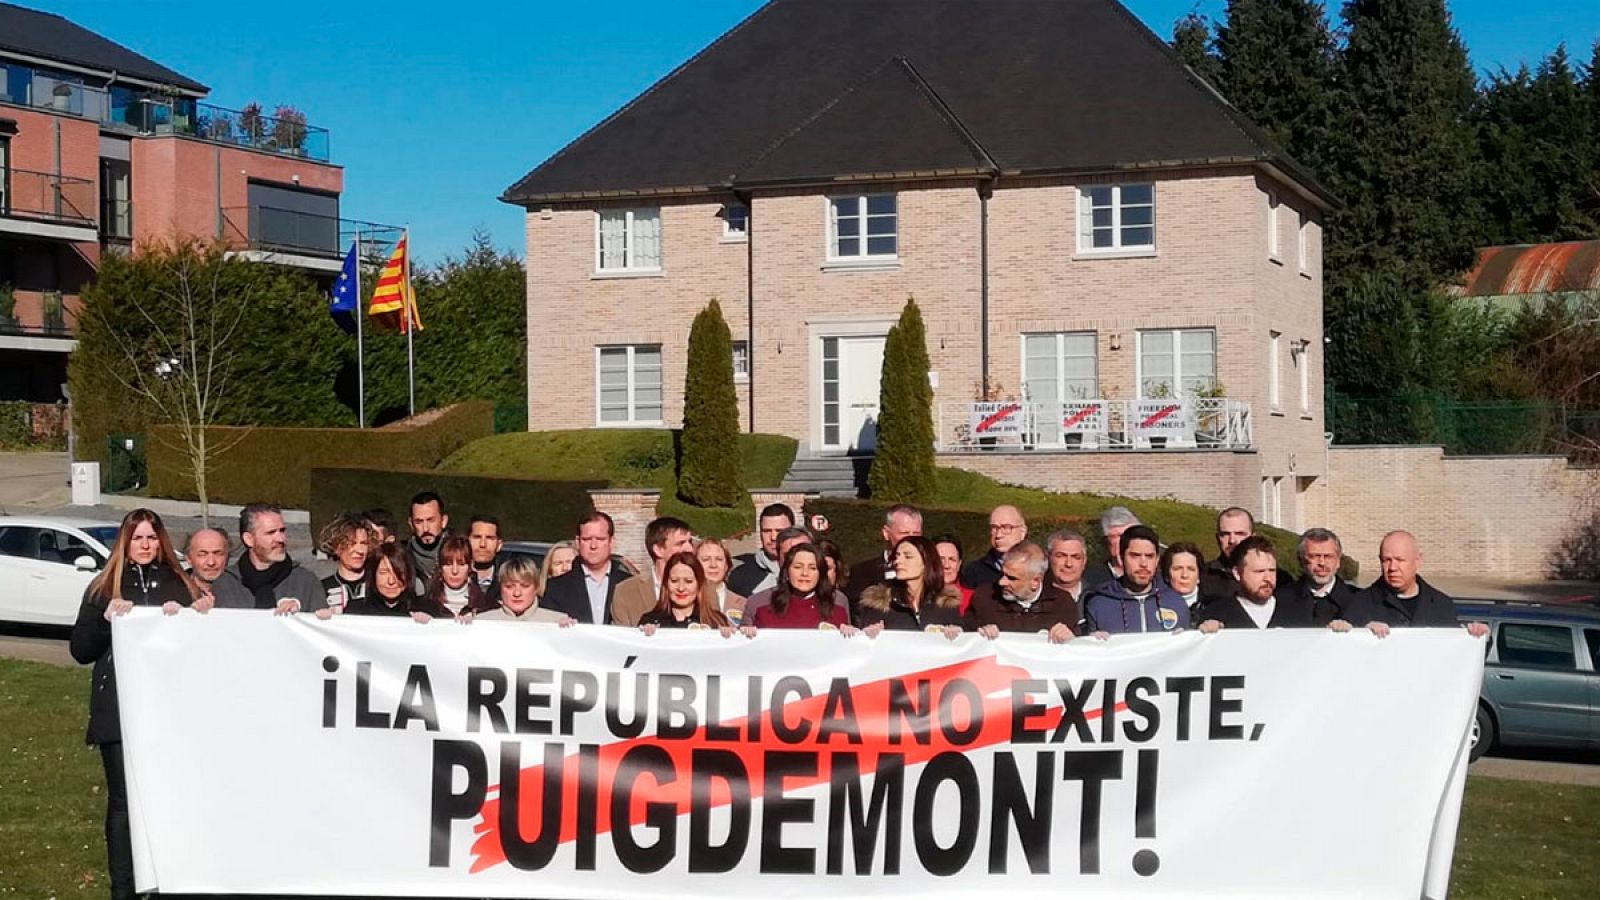 Arrimadas despliega una pancarta frente a la casa de Puigdemont en Waterloo con el mensaje "La república no existe"